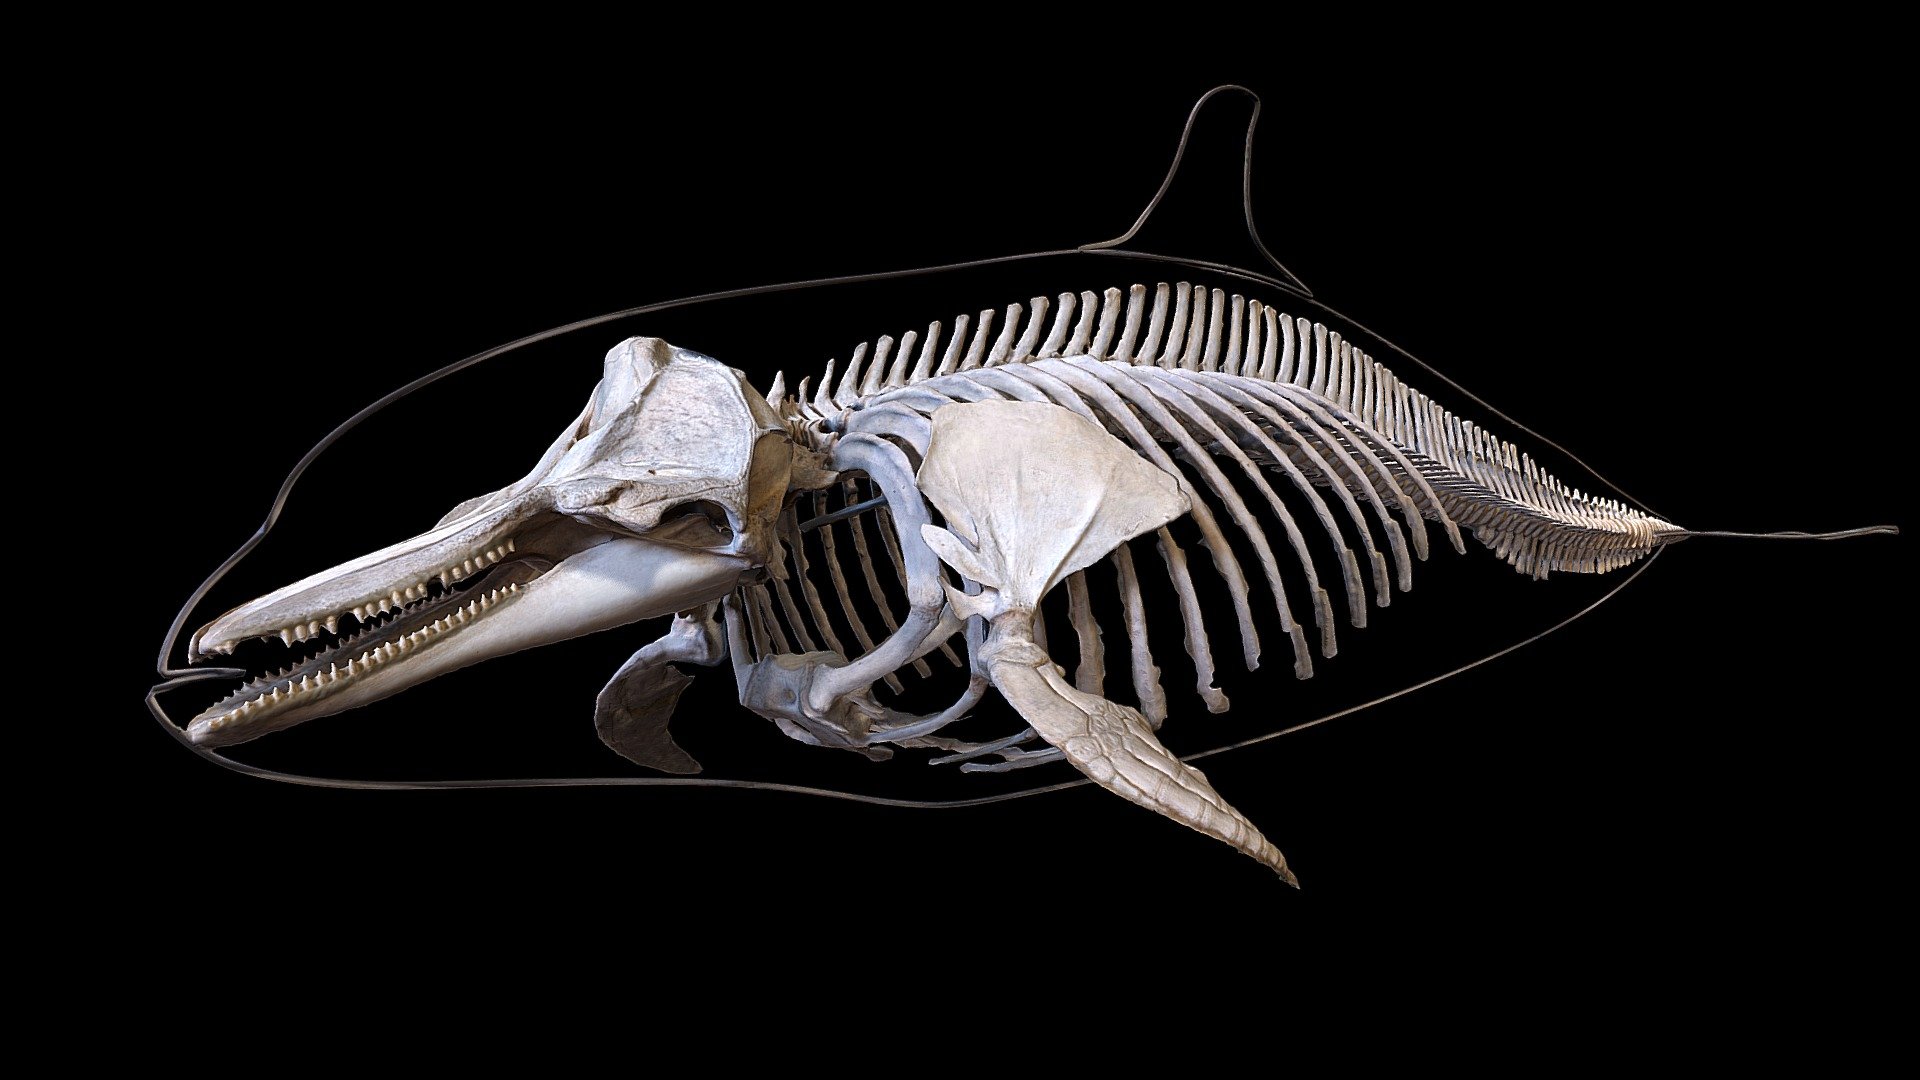 Squellette de dauphin
Collection de l'Aquarium-Muséum Universitaire de Liège - Dolphin skeleton - Buy Royalty Free 3D model by LZ Creation (@jmch) 3d model